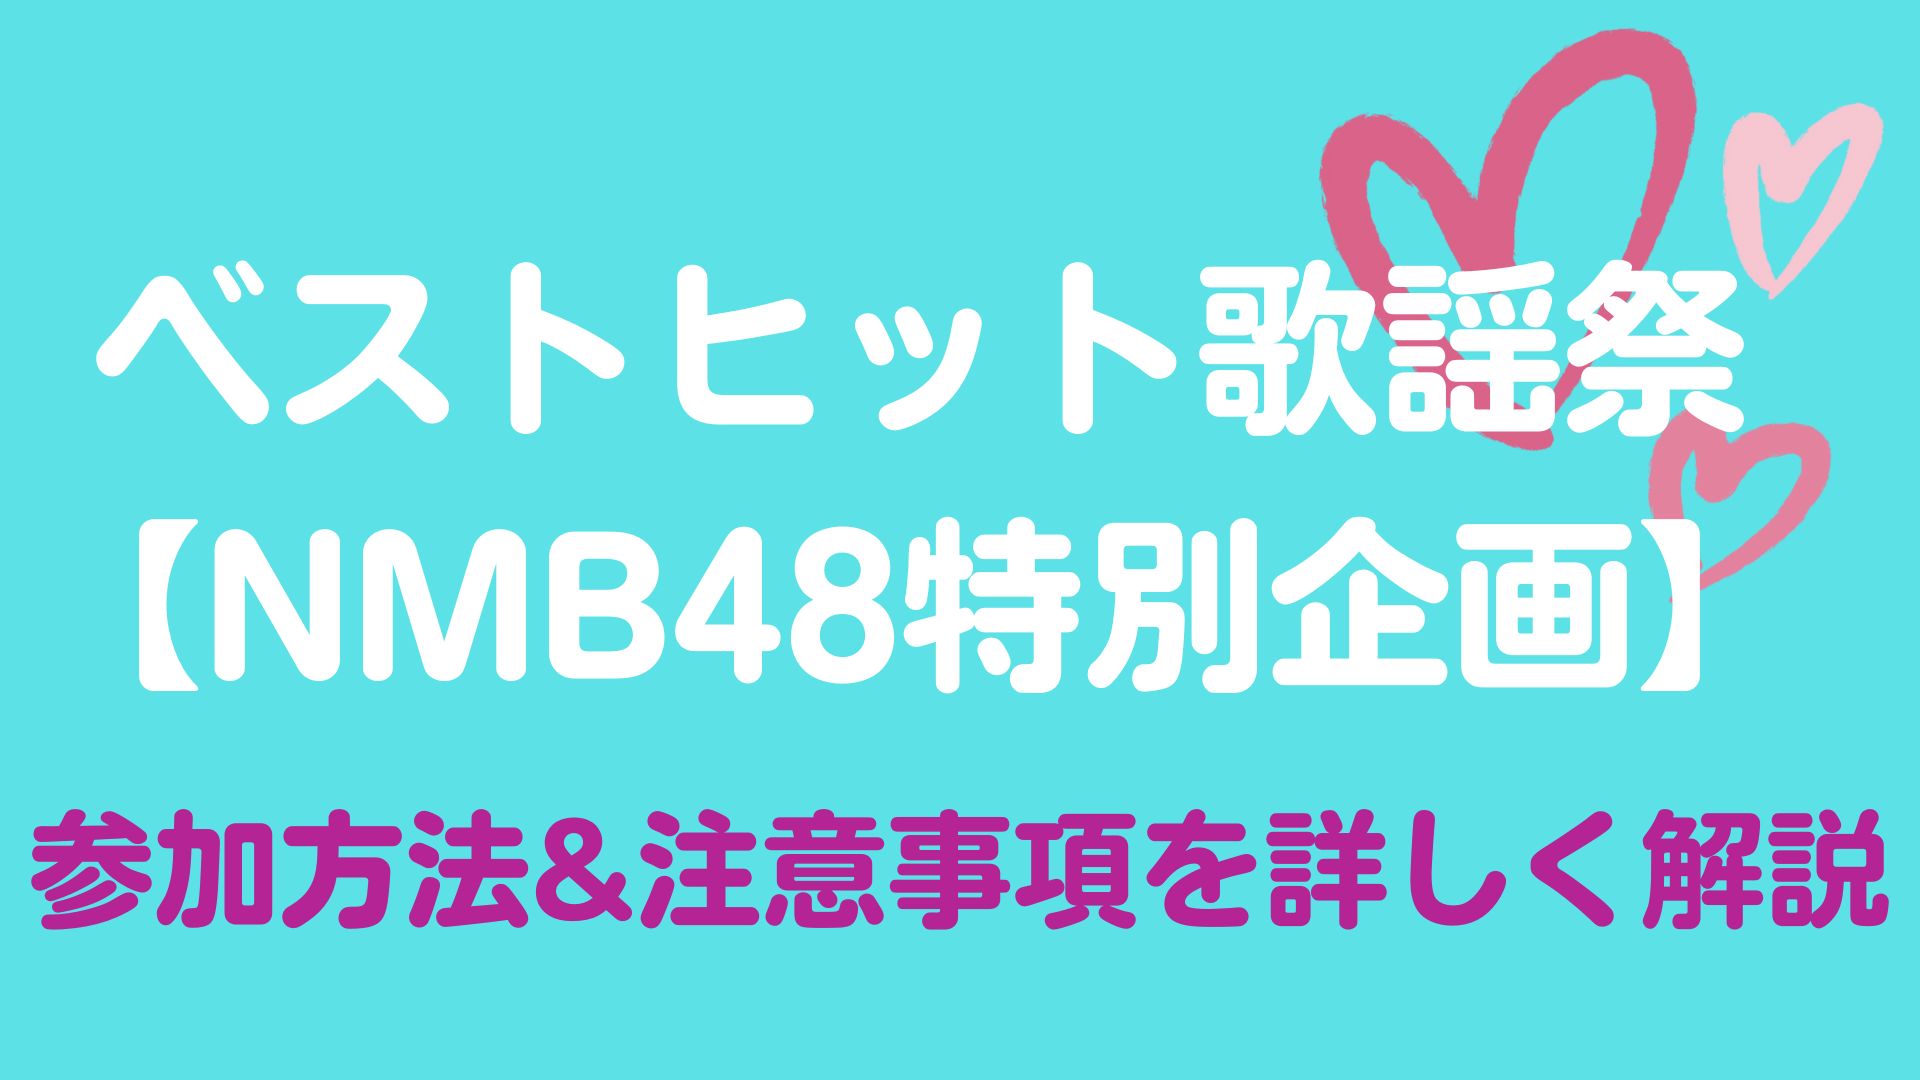 ベストヒット歌謡祭NMB特別企画